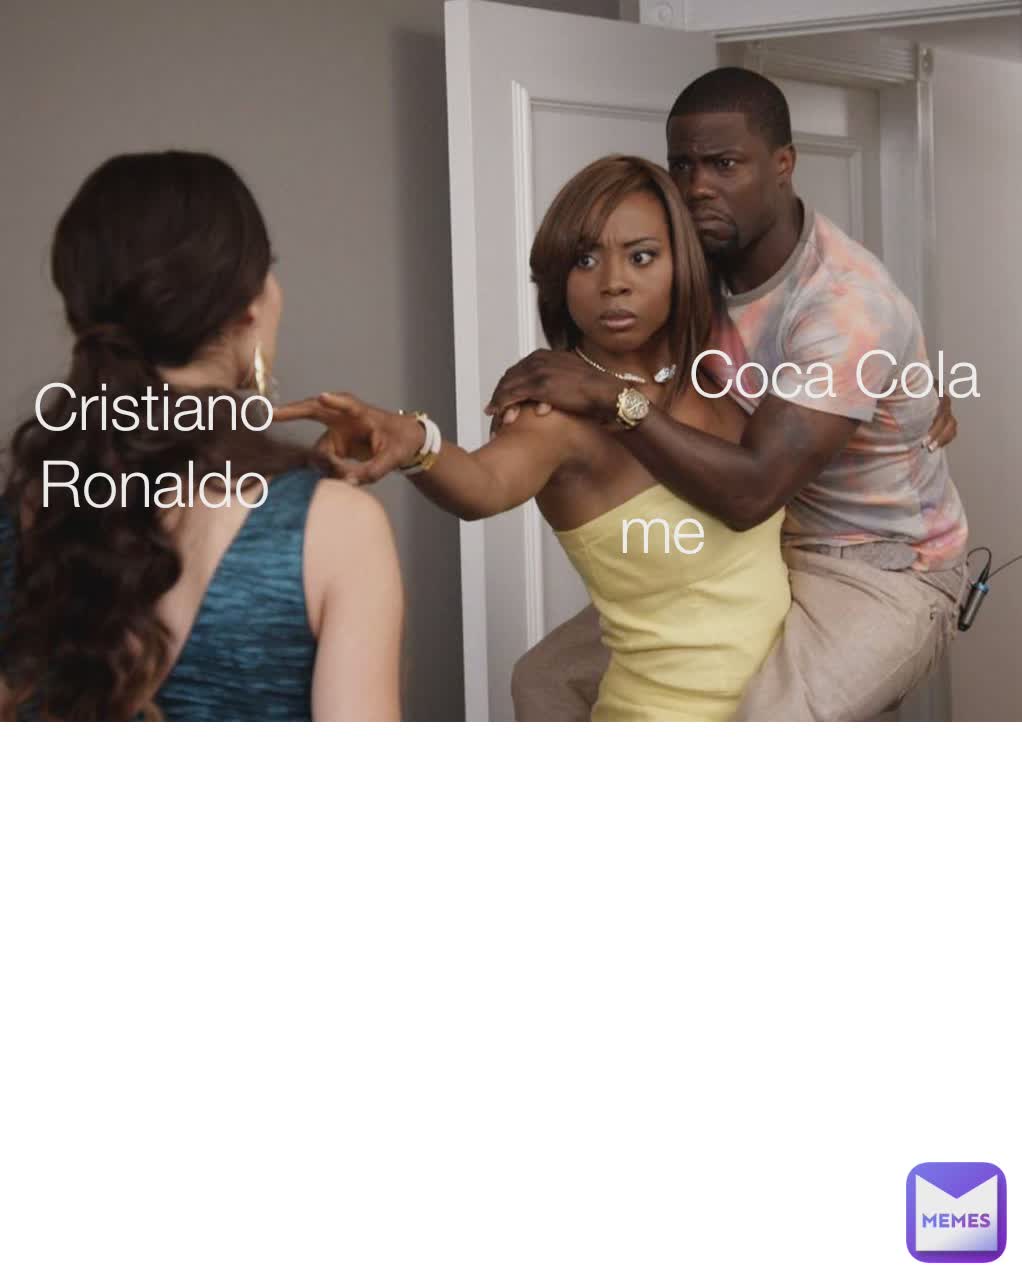 Cristiano Ronaldo me Coca Cola